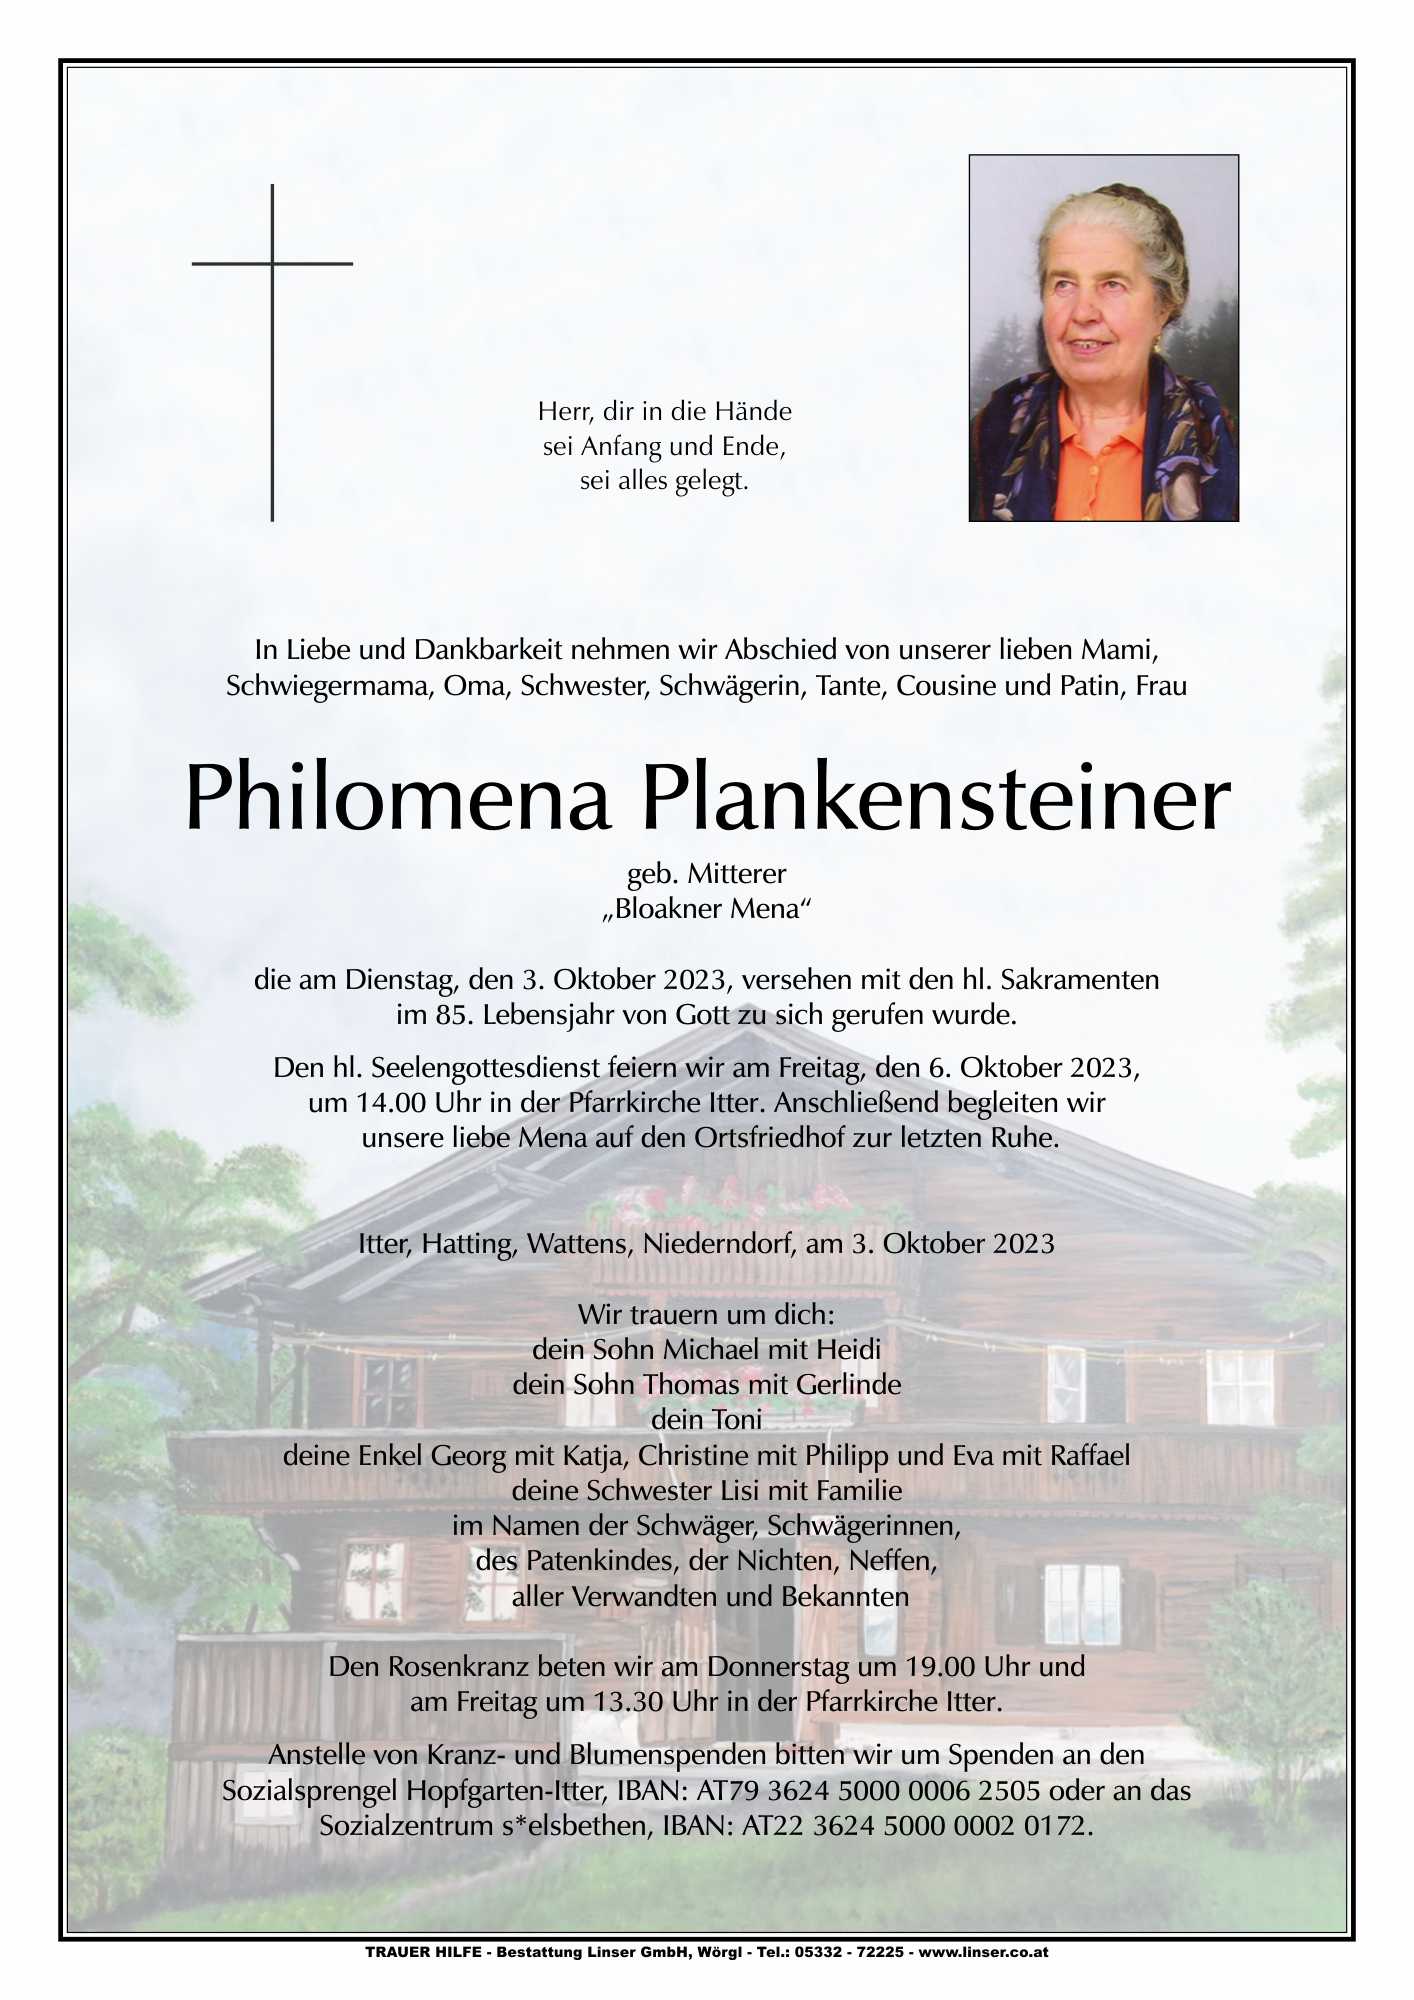 Philomena Plankensteiner